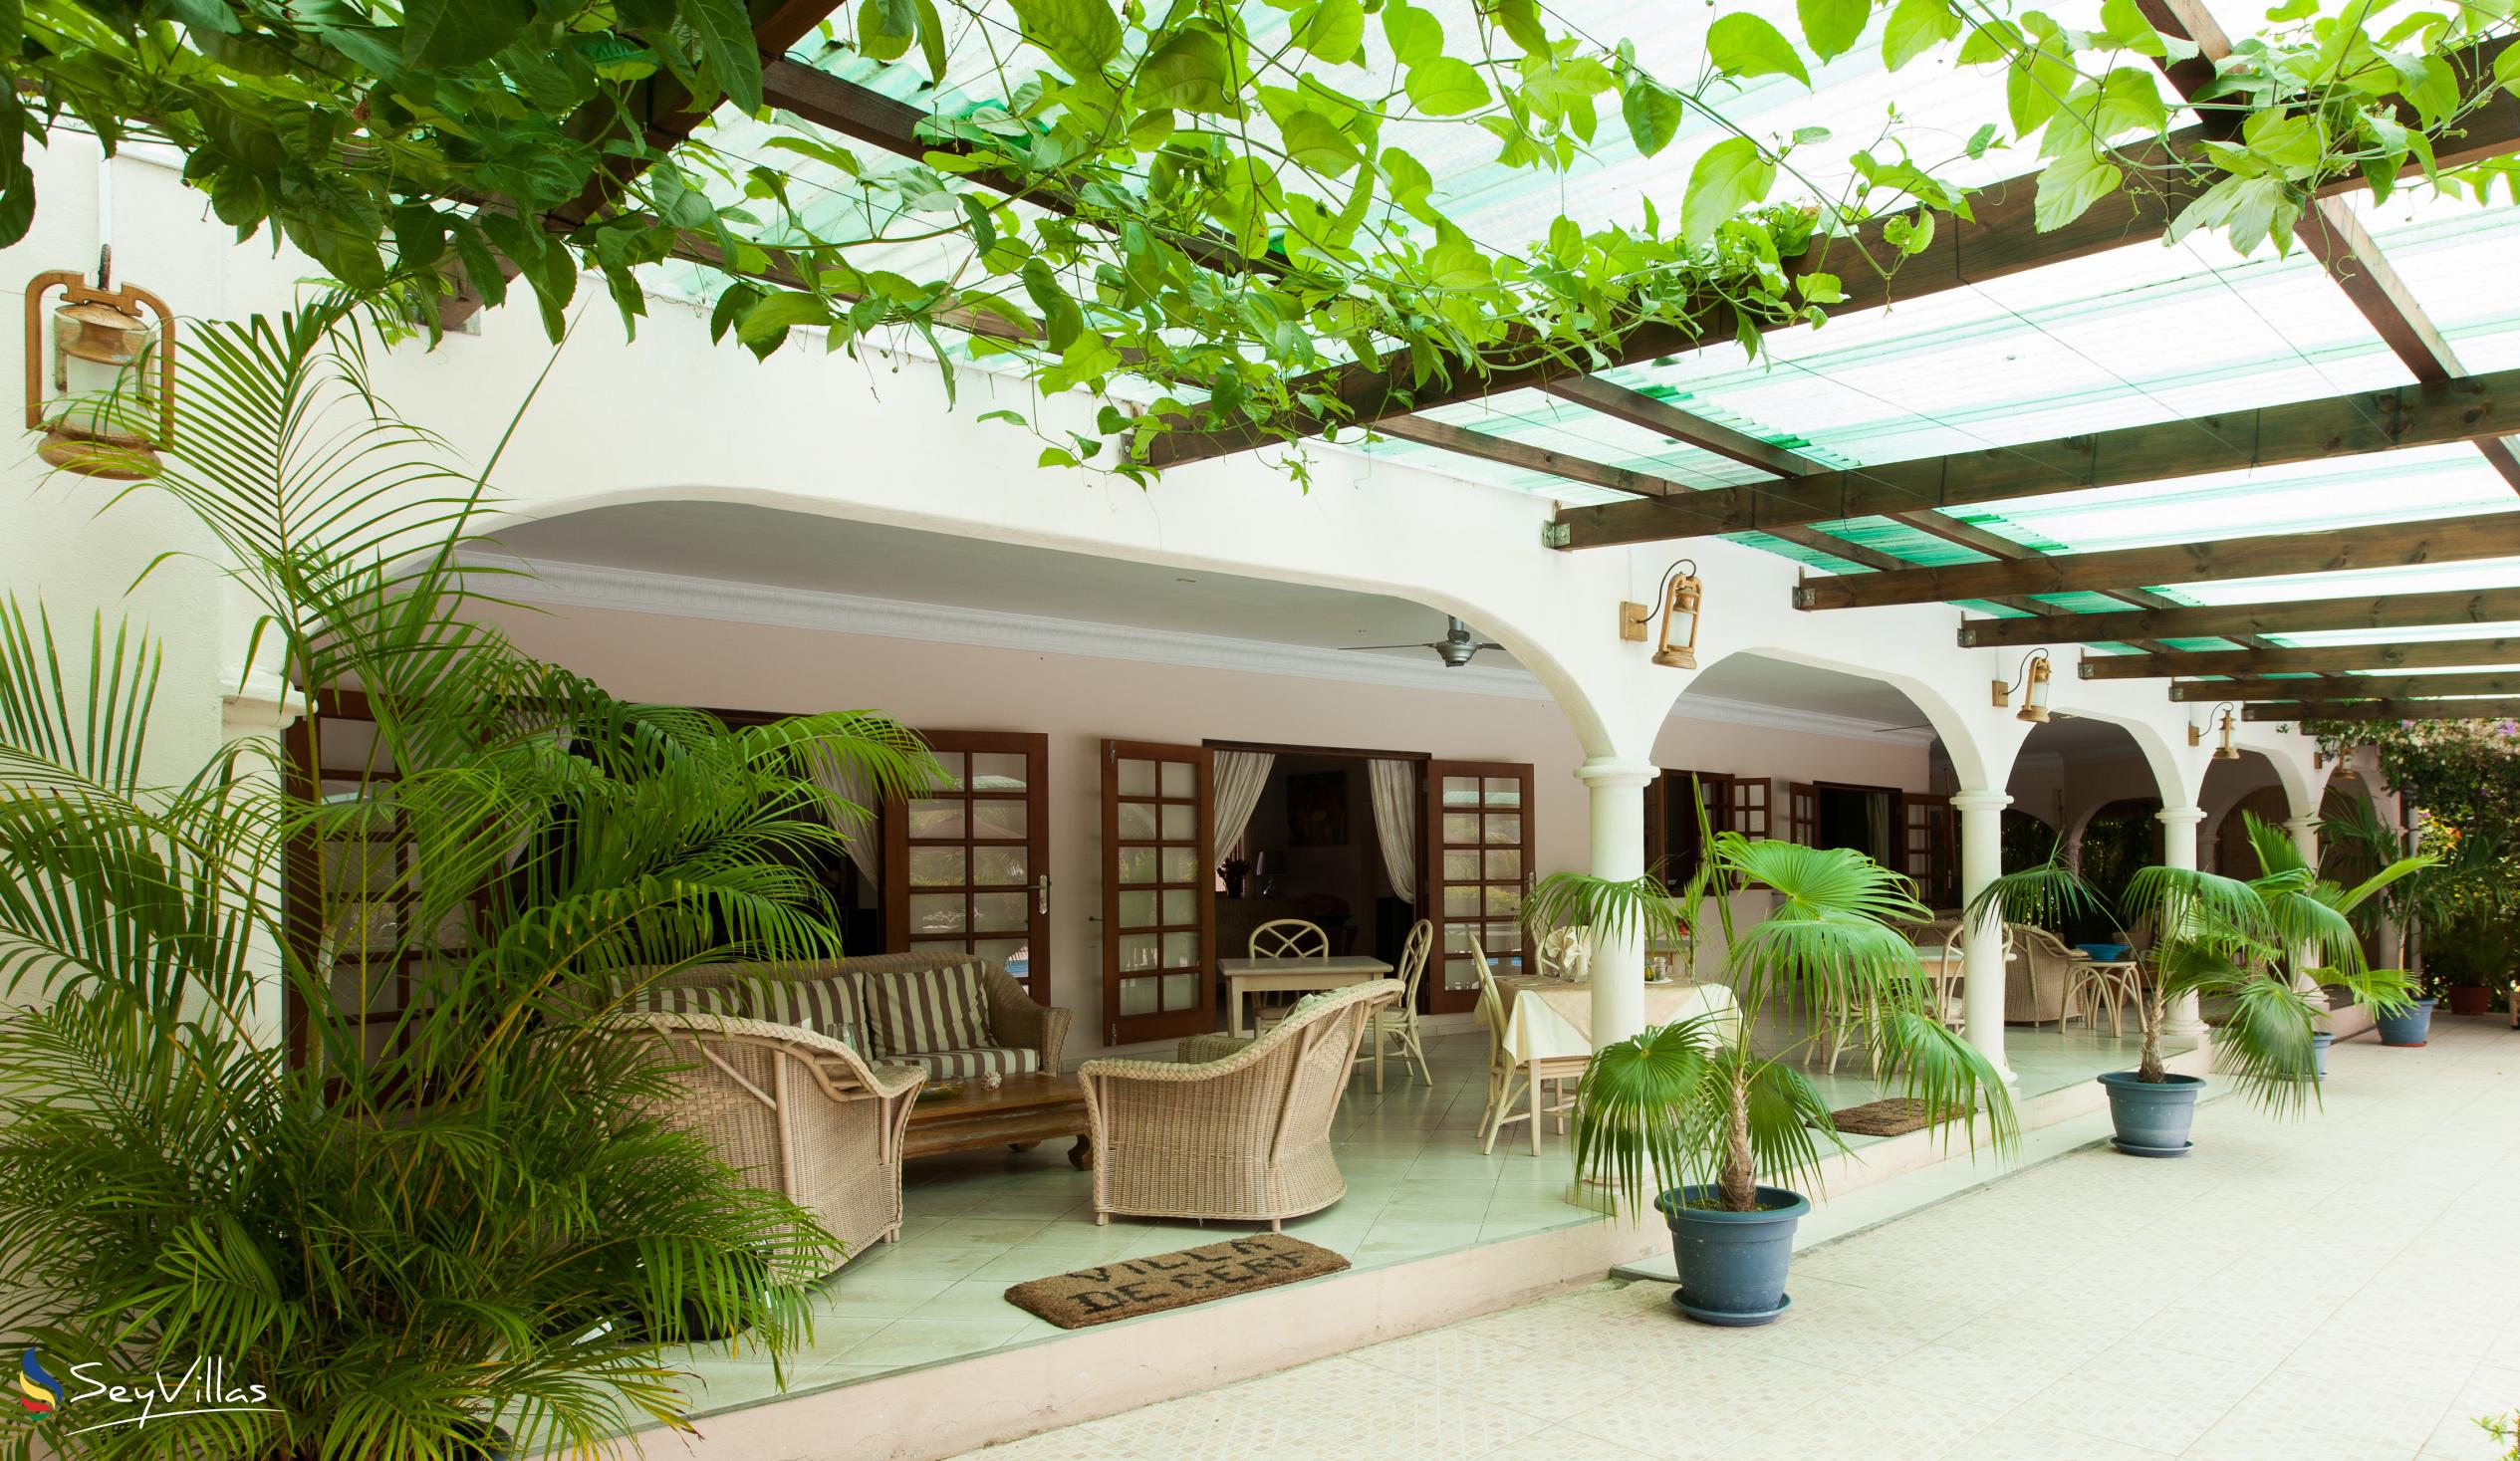 Photo 22: Villa de Cerf - Indoor area - Cerf Island (Seychelles)